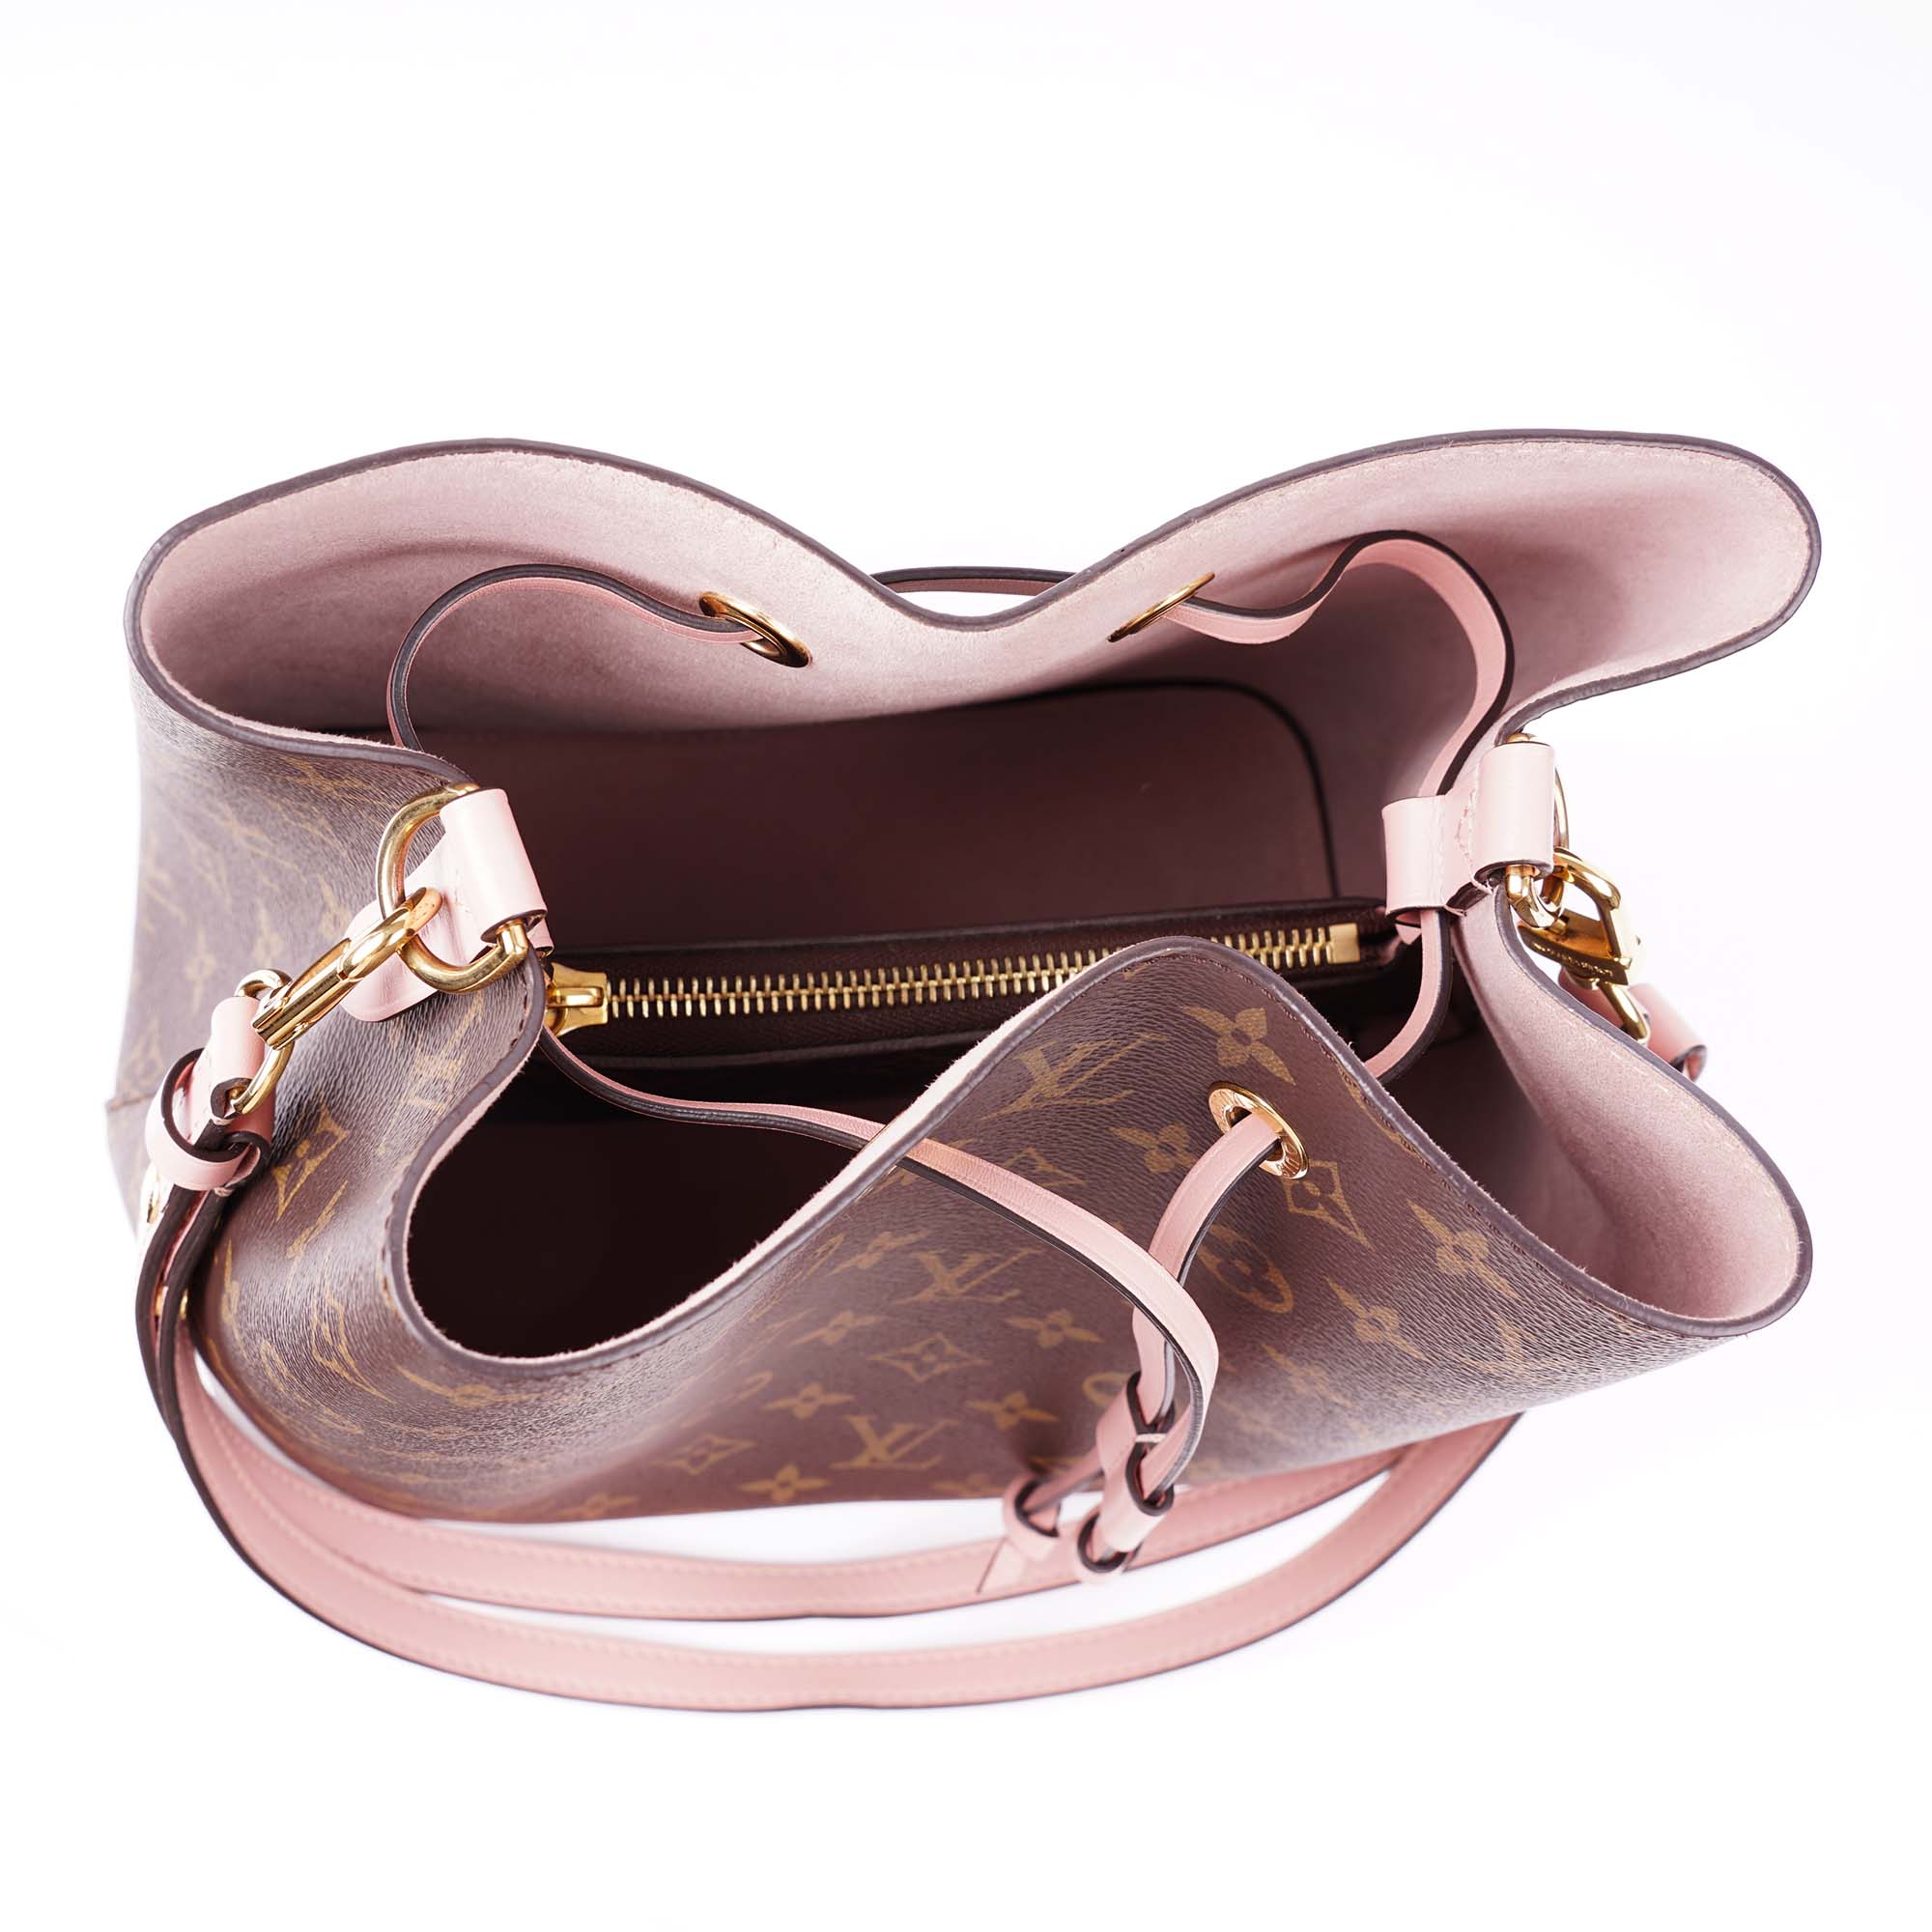 NéoNoé Shoulder Bag - LOUIS VUITTON - Affordable Luxury image